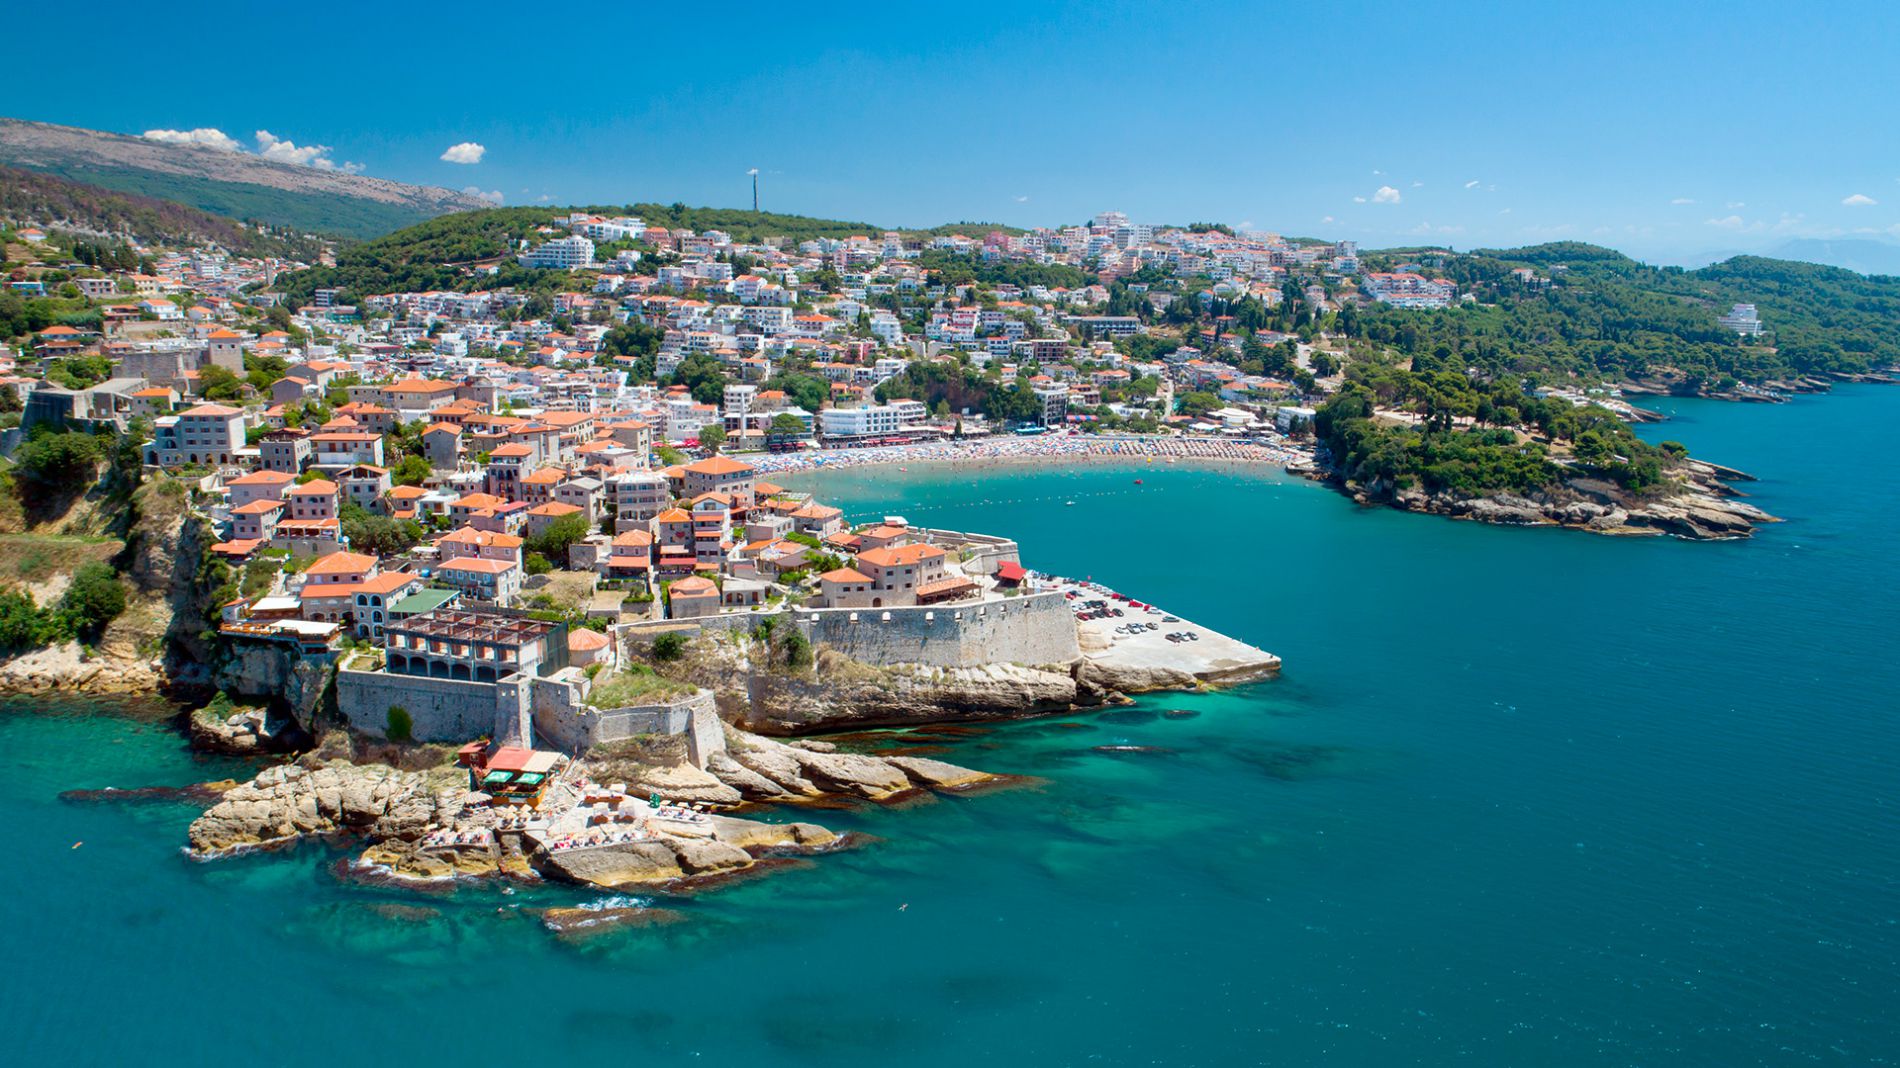 Самый южный город побережья Черногории — Ульцинь.